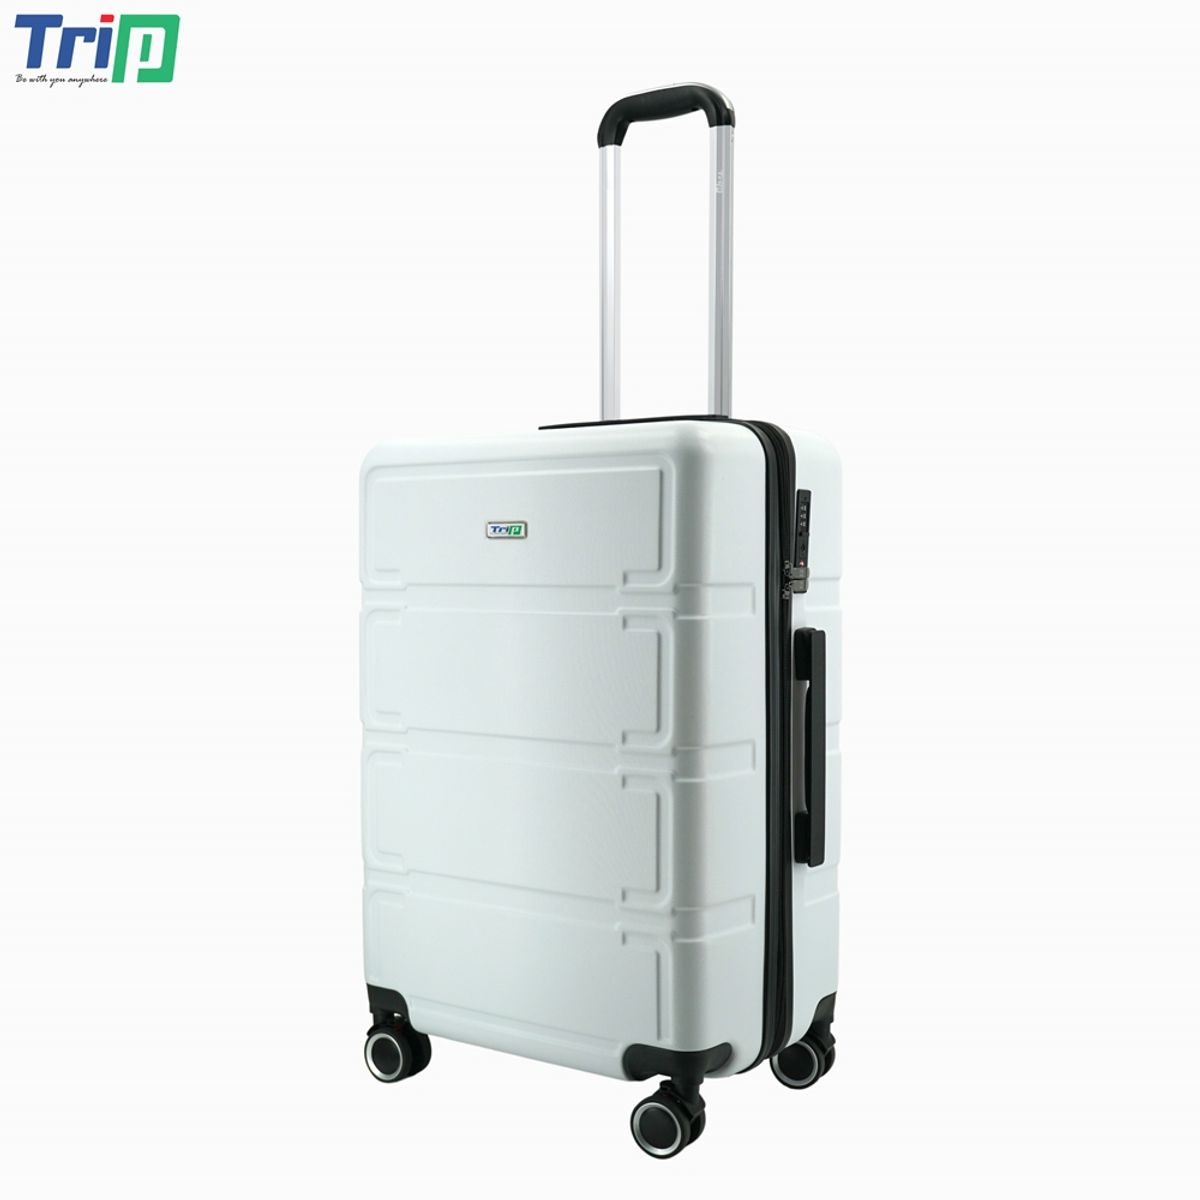 vali nhựa trip p806 size 24 inch, có khóa bảo mật, bảo hành 5 năm - freeship 5